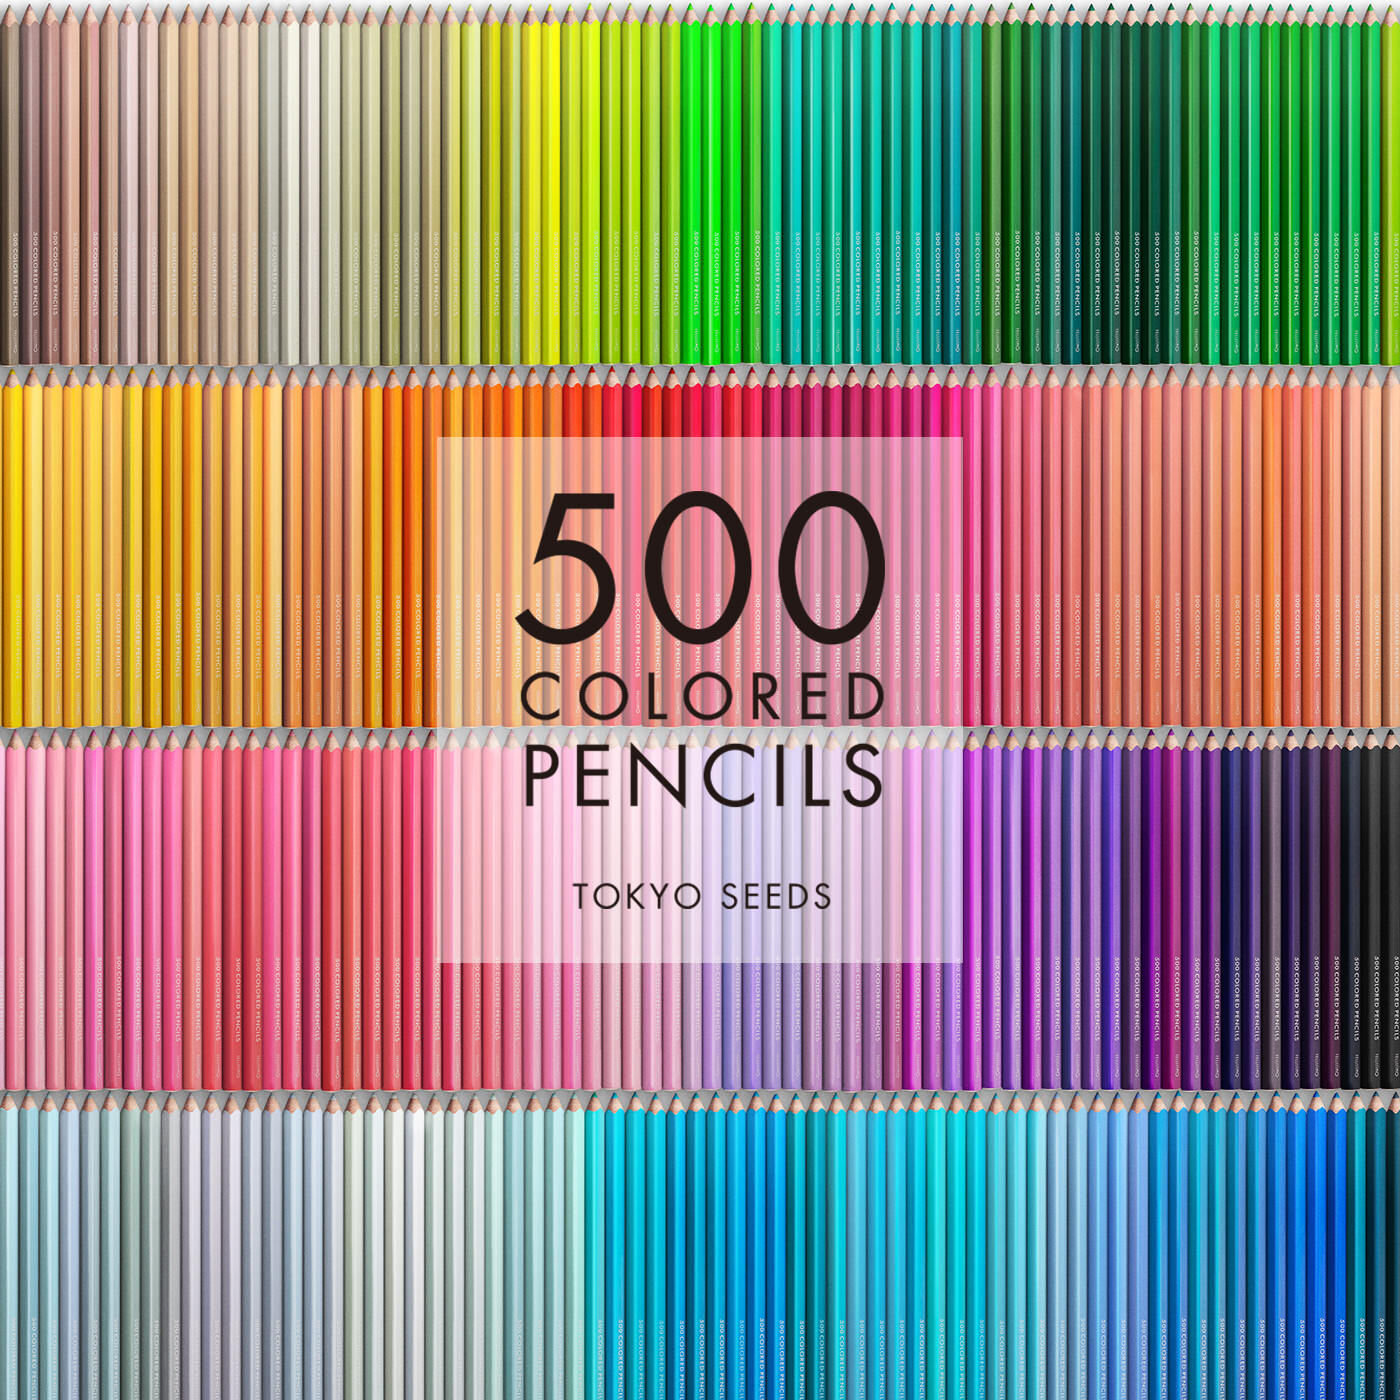 Real Stock|【54/500 ATHLETICS DAY】500色の色えんぴつ TOKYO SEEDS|1992年、世界初の「500色」という膨大な色数の色えんぴつが誕生して以来、その販売数は発売当初から合わせると、世界55ヵ国10万セット以上。今回、メイド・イン・ジャパンにこだわり、すべてが新しく生まれ変わって登場しました。